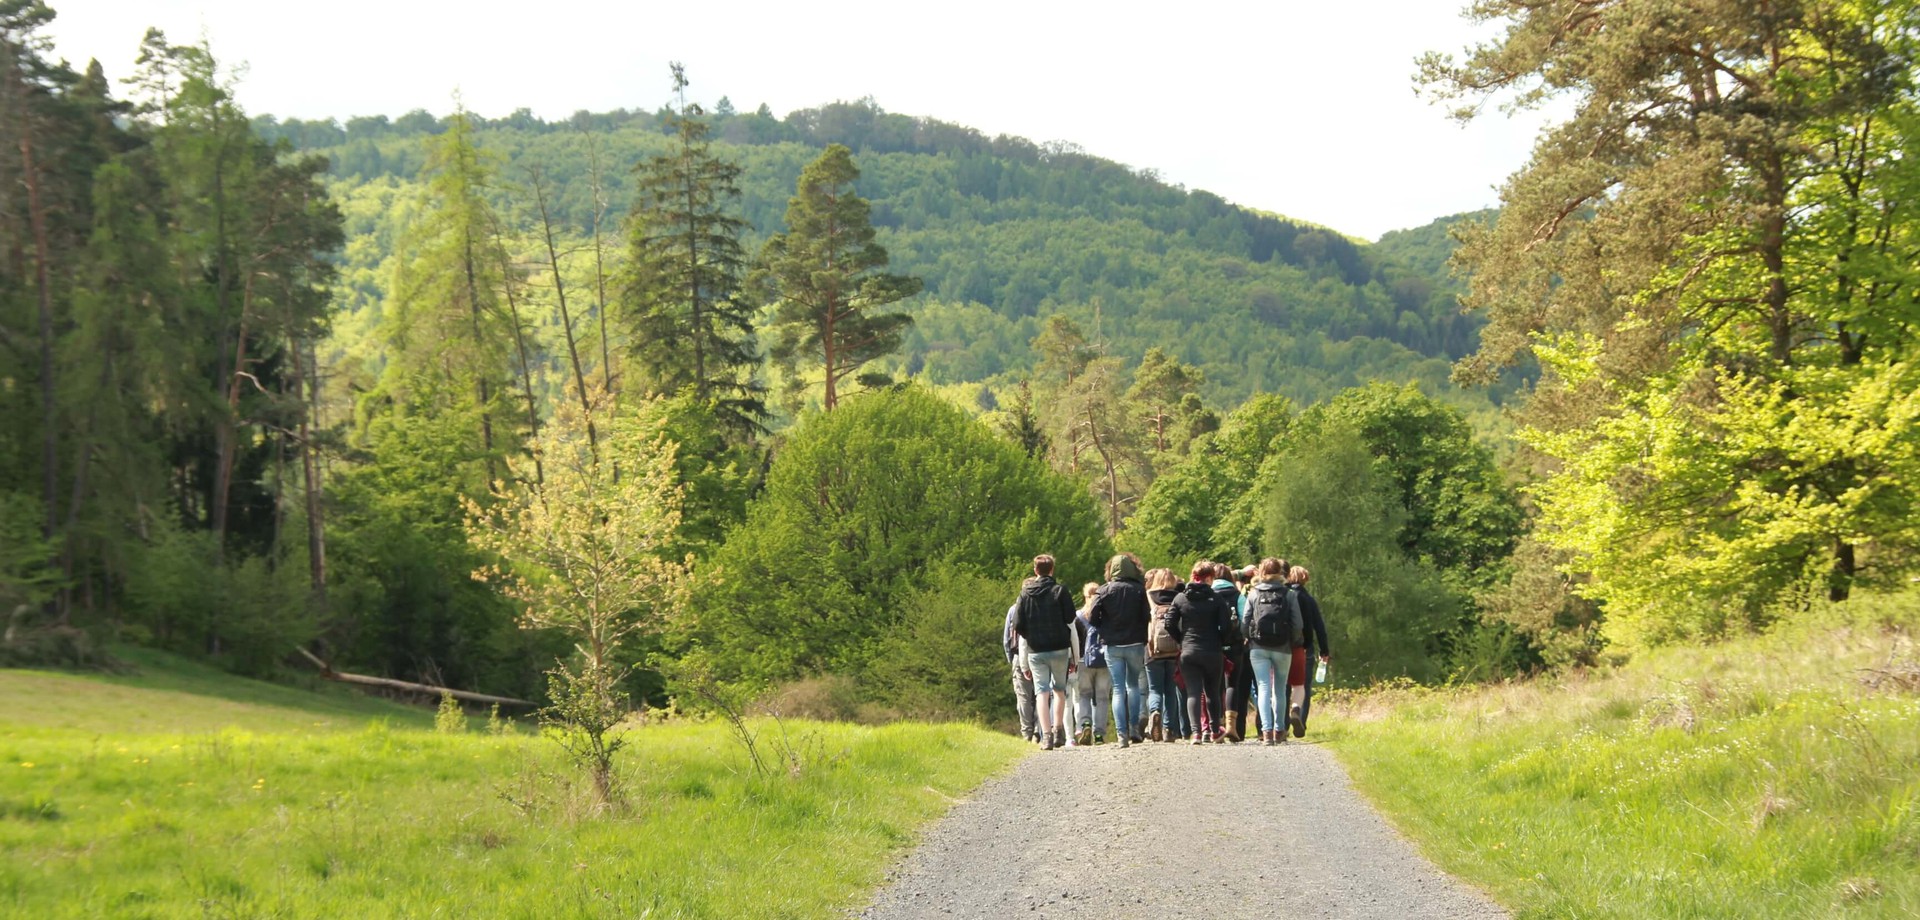 Das Bild zeigt eine Gruppe von Menschen auf einem Wanderweg. ©Yanna Josczok